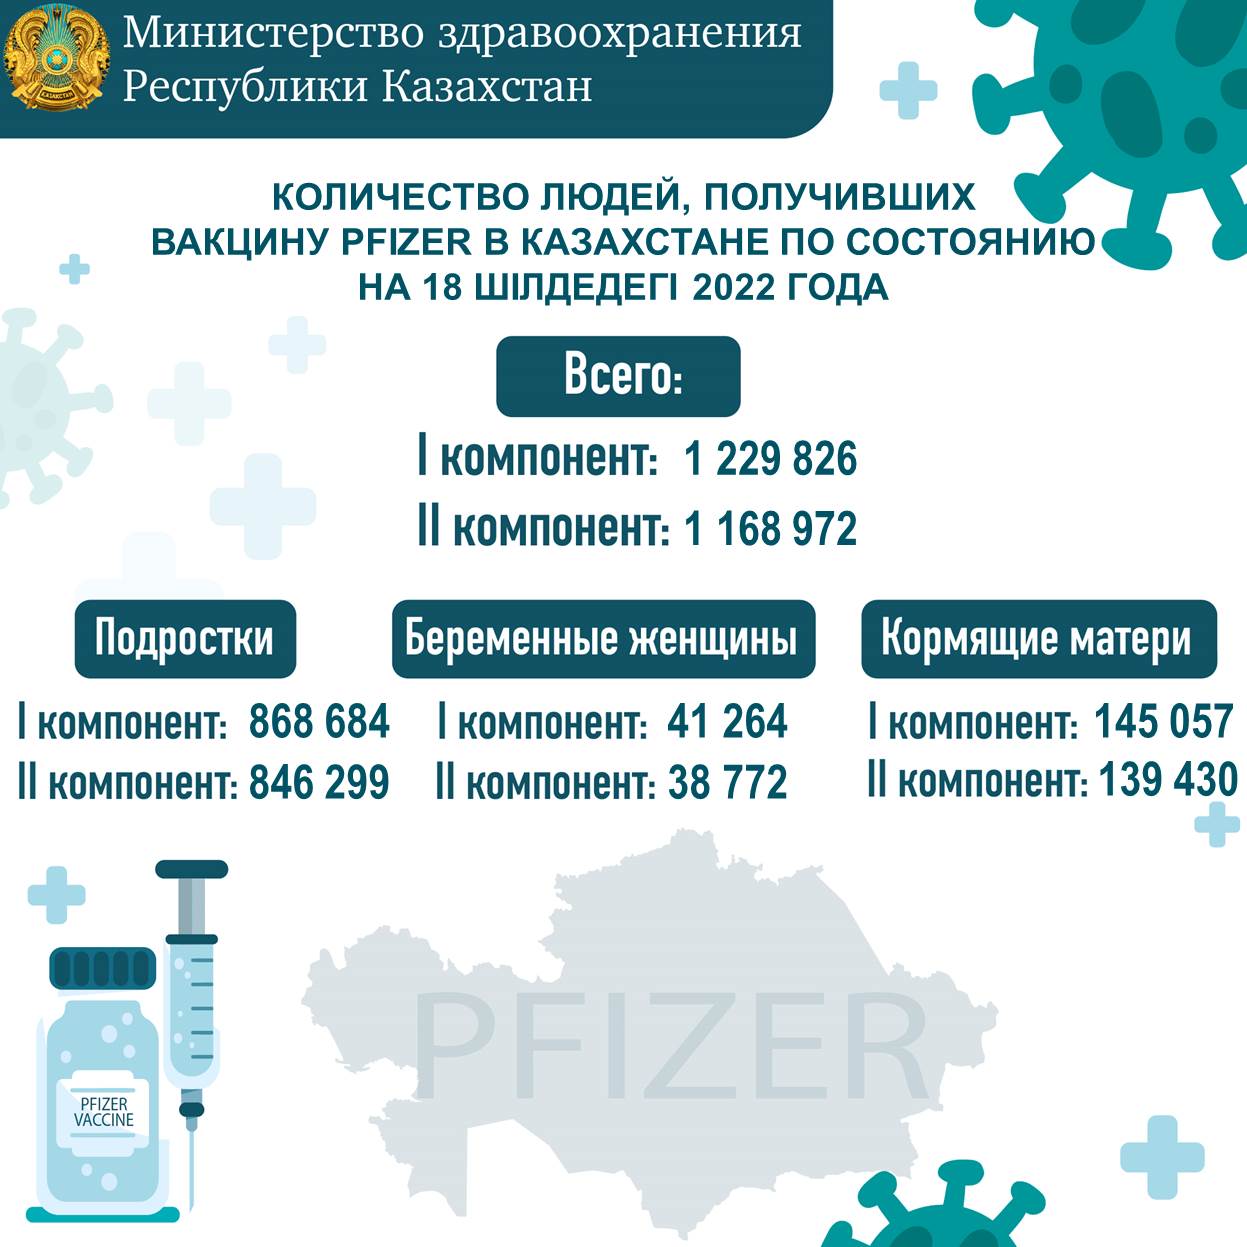 Количество людей, получивших вакцину Рfizer в Казахстане по состоянию на 18.07.2022 года